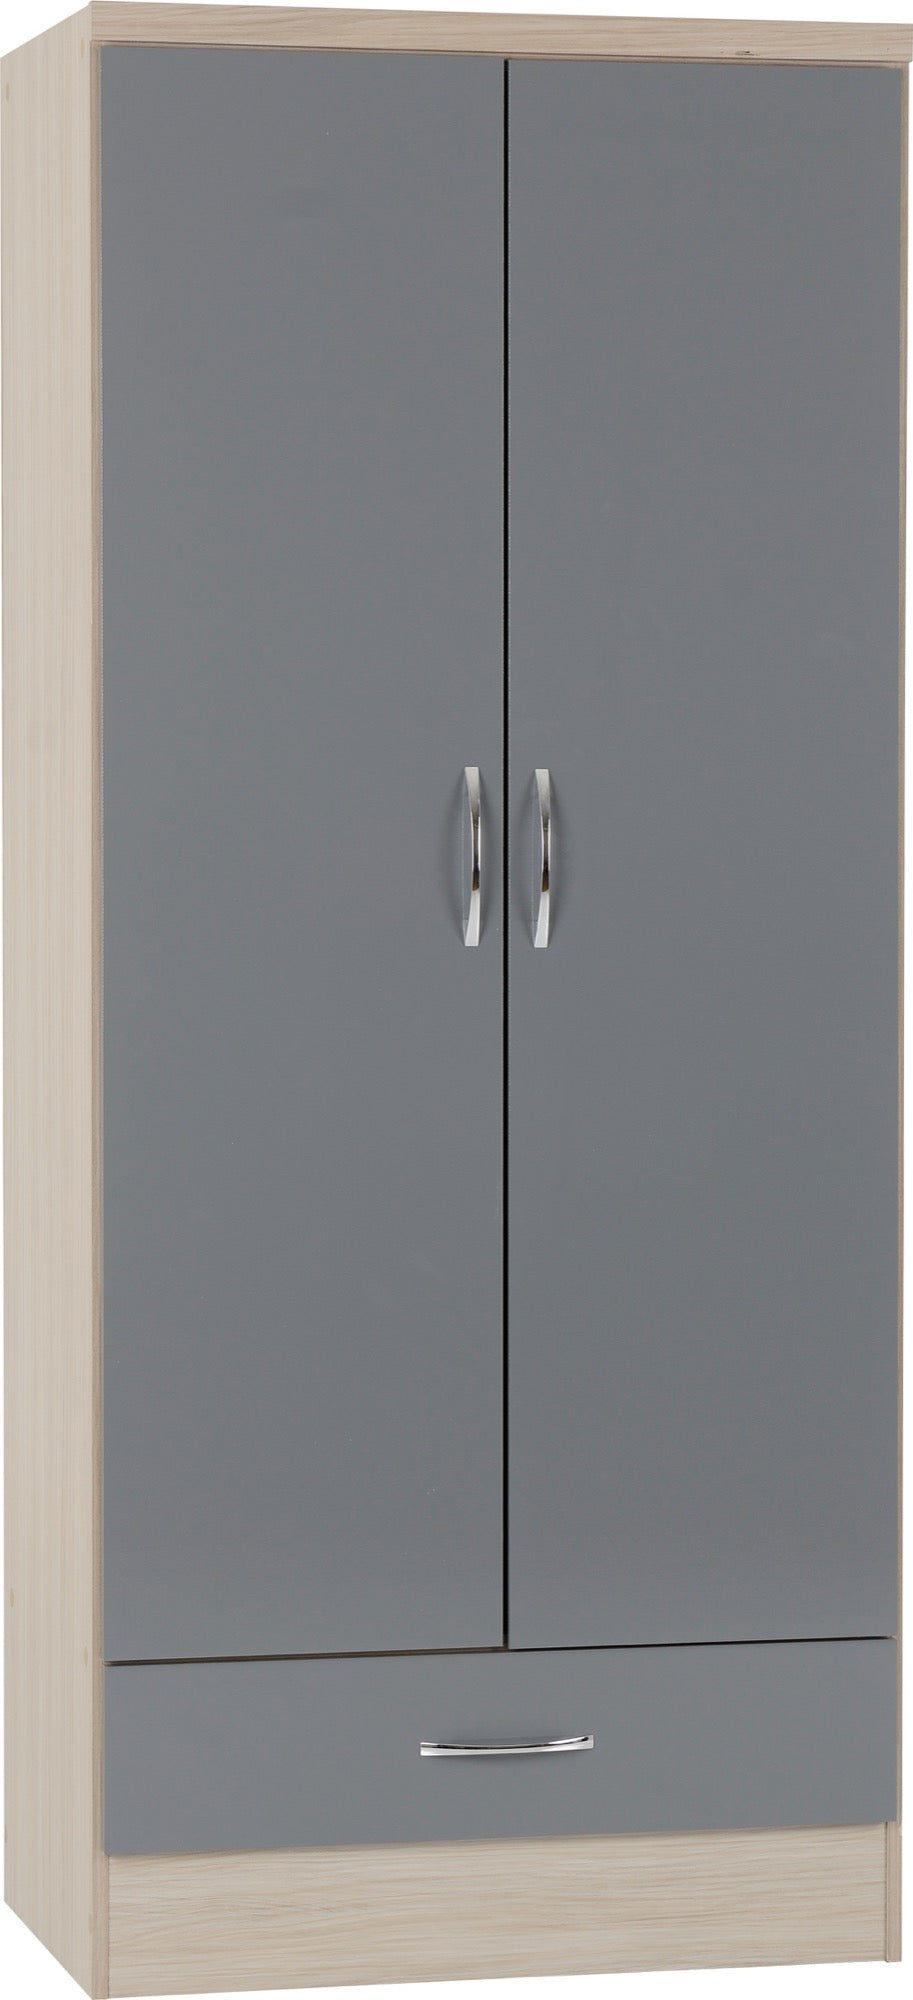 2 Door 1 Drawer Wardrobe Grey Gloss/Light Oak Effect Veneer